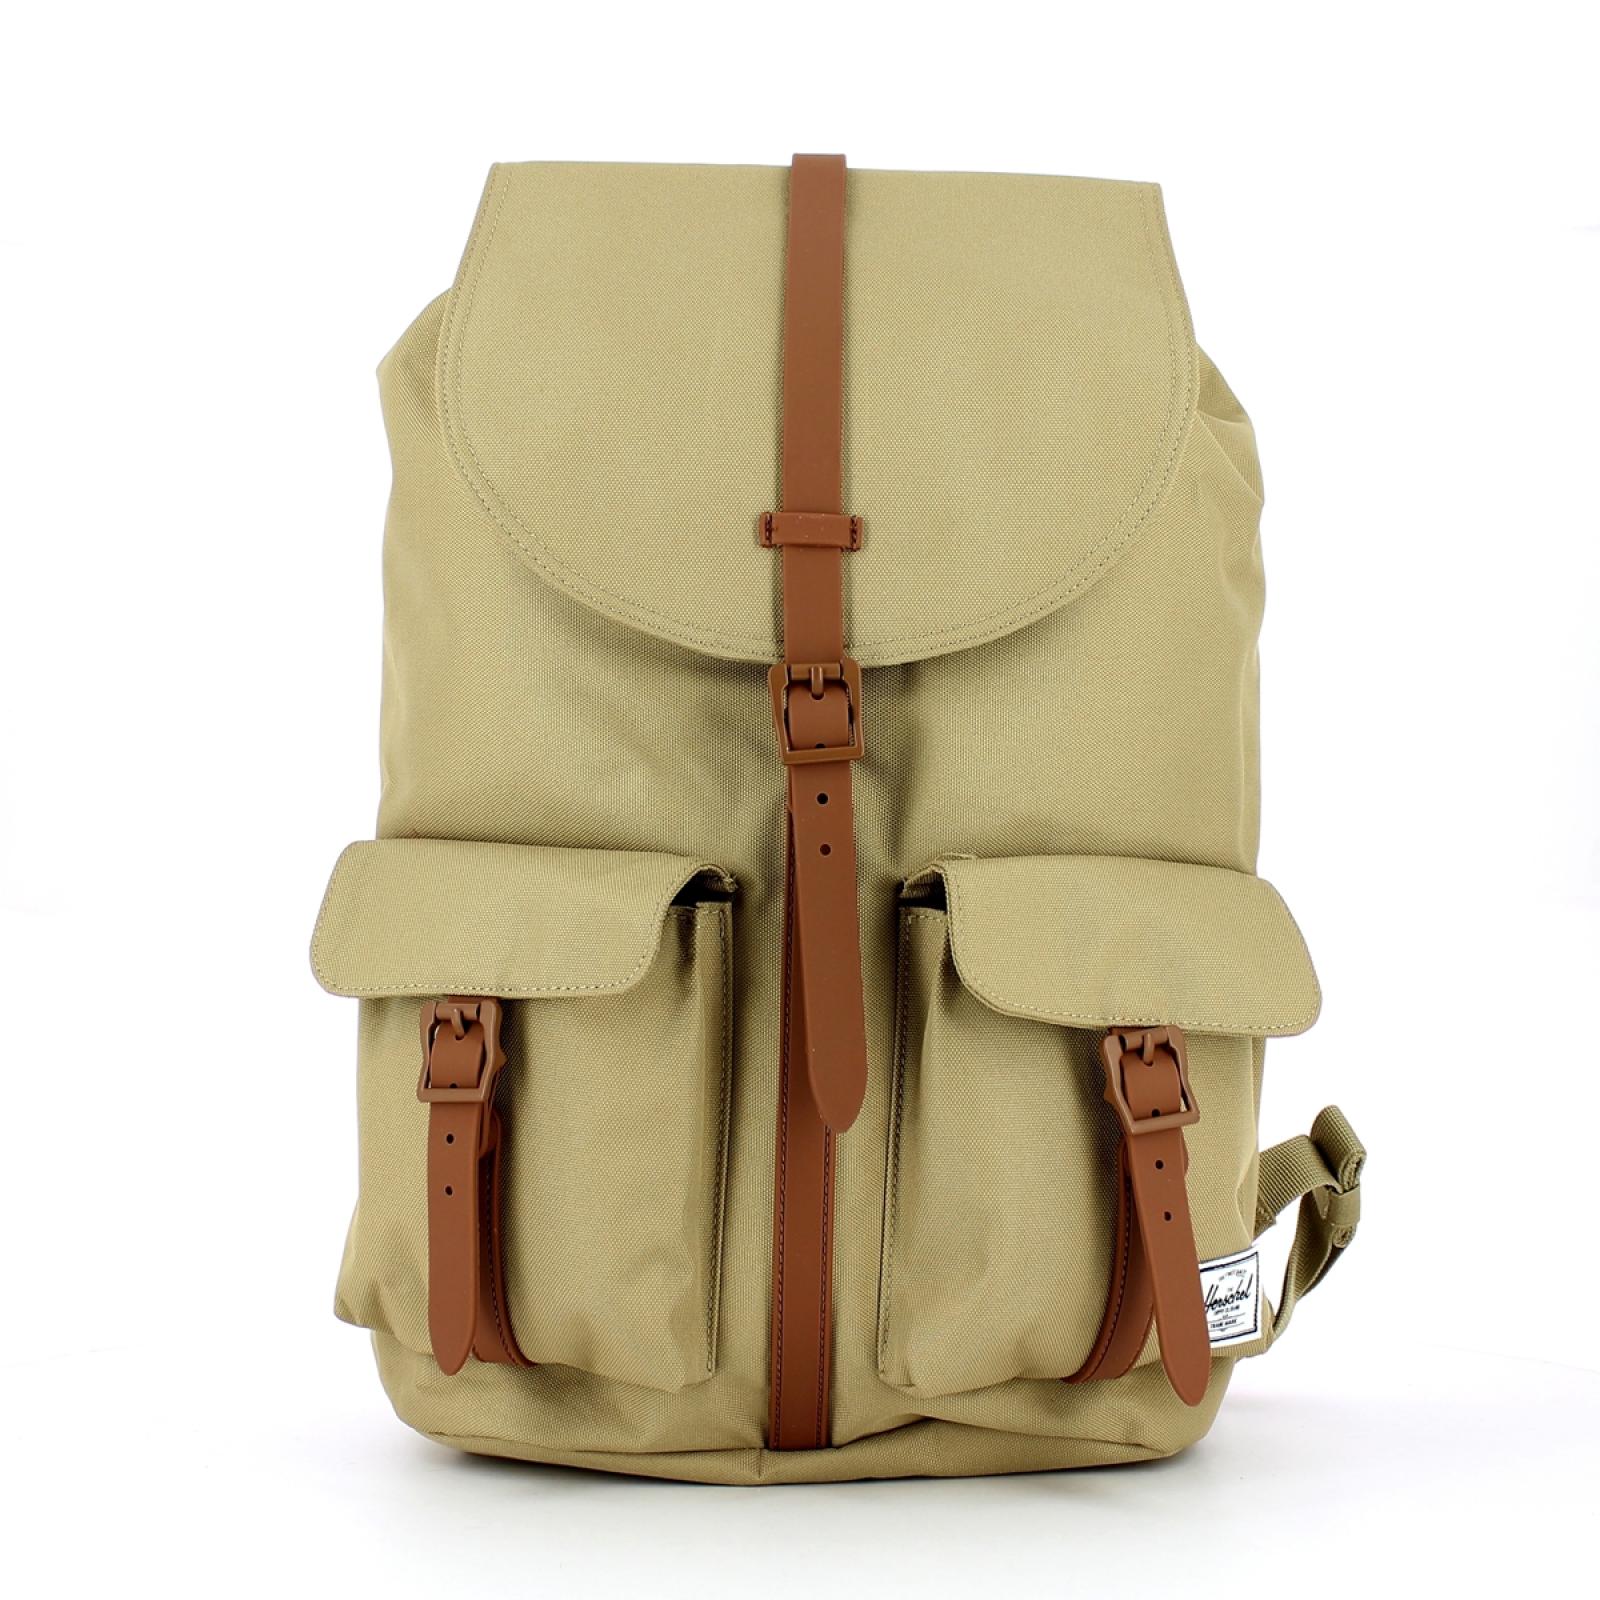 Herschel Dawson Backpack 13.0 - 1